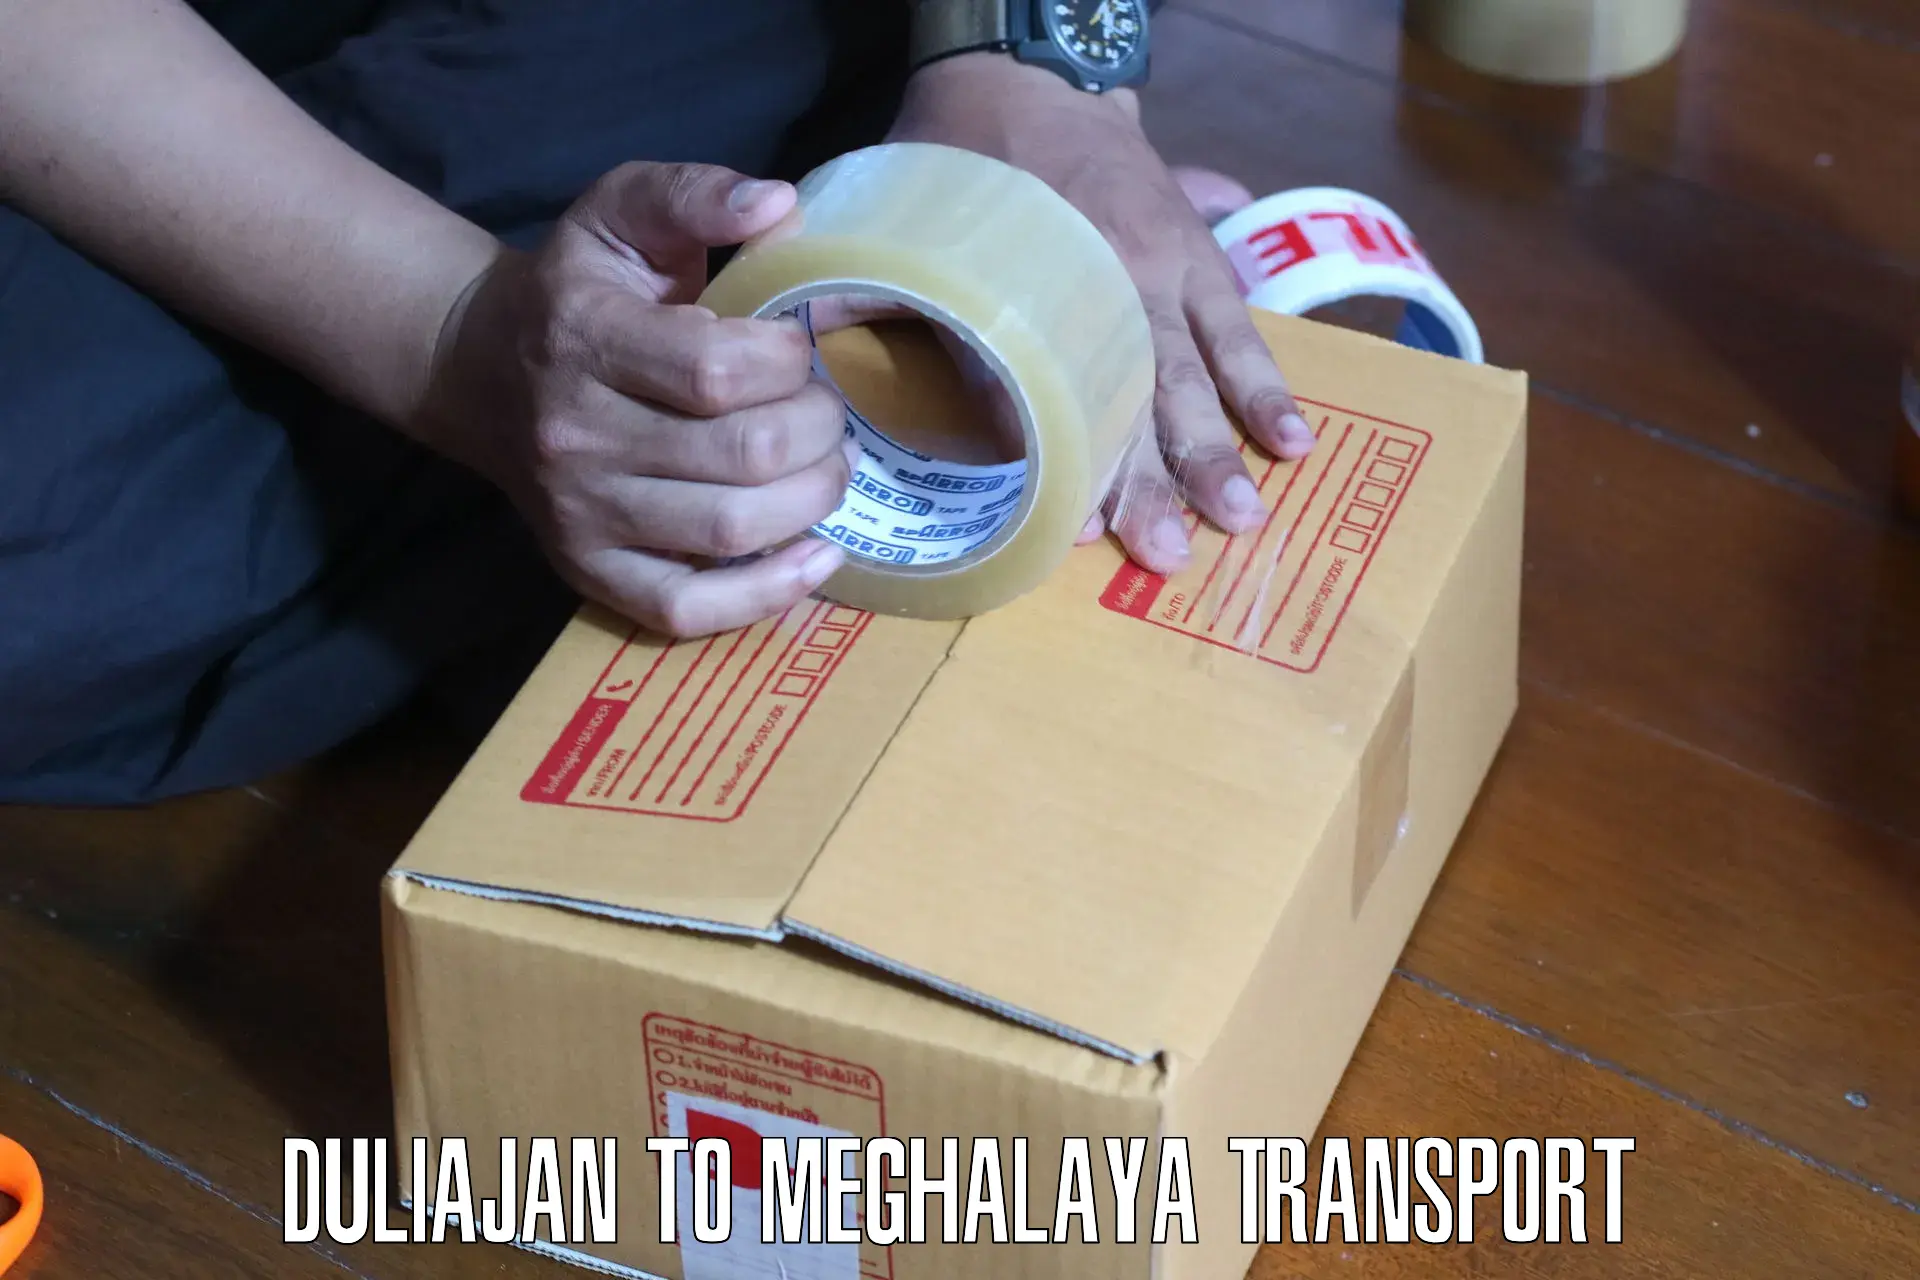 Shipping partner Duliajan to Dkhiah West